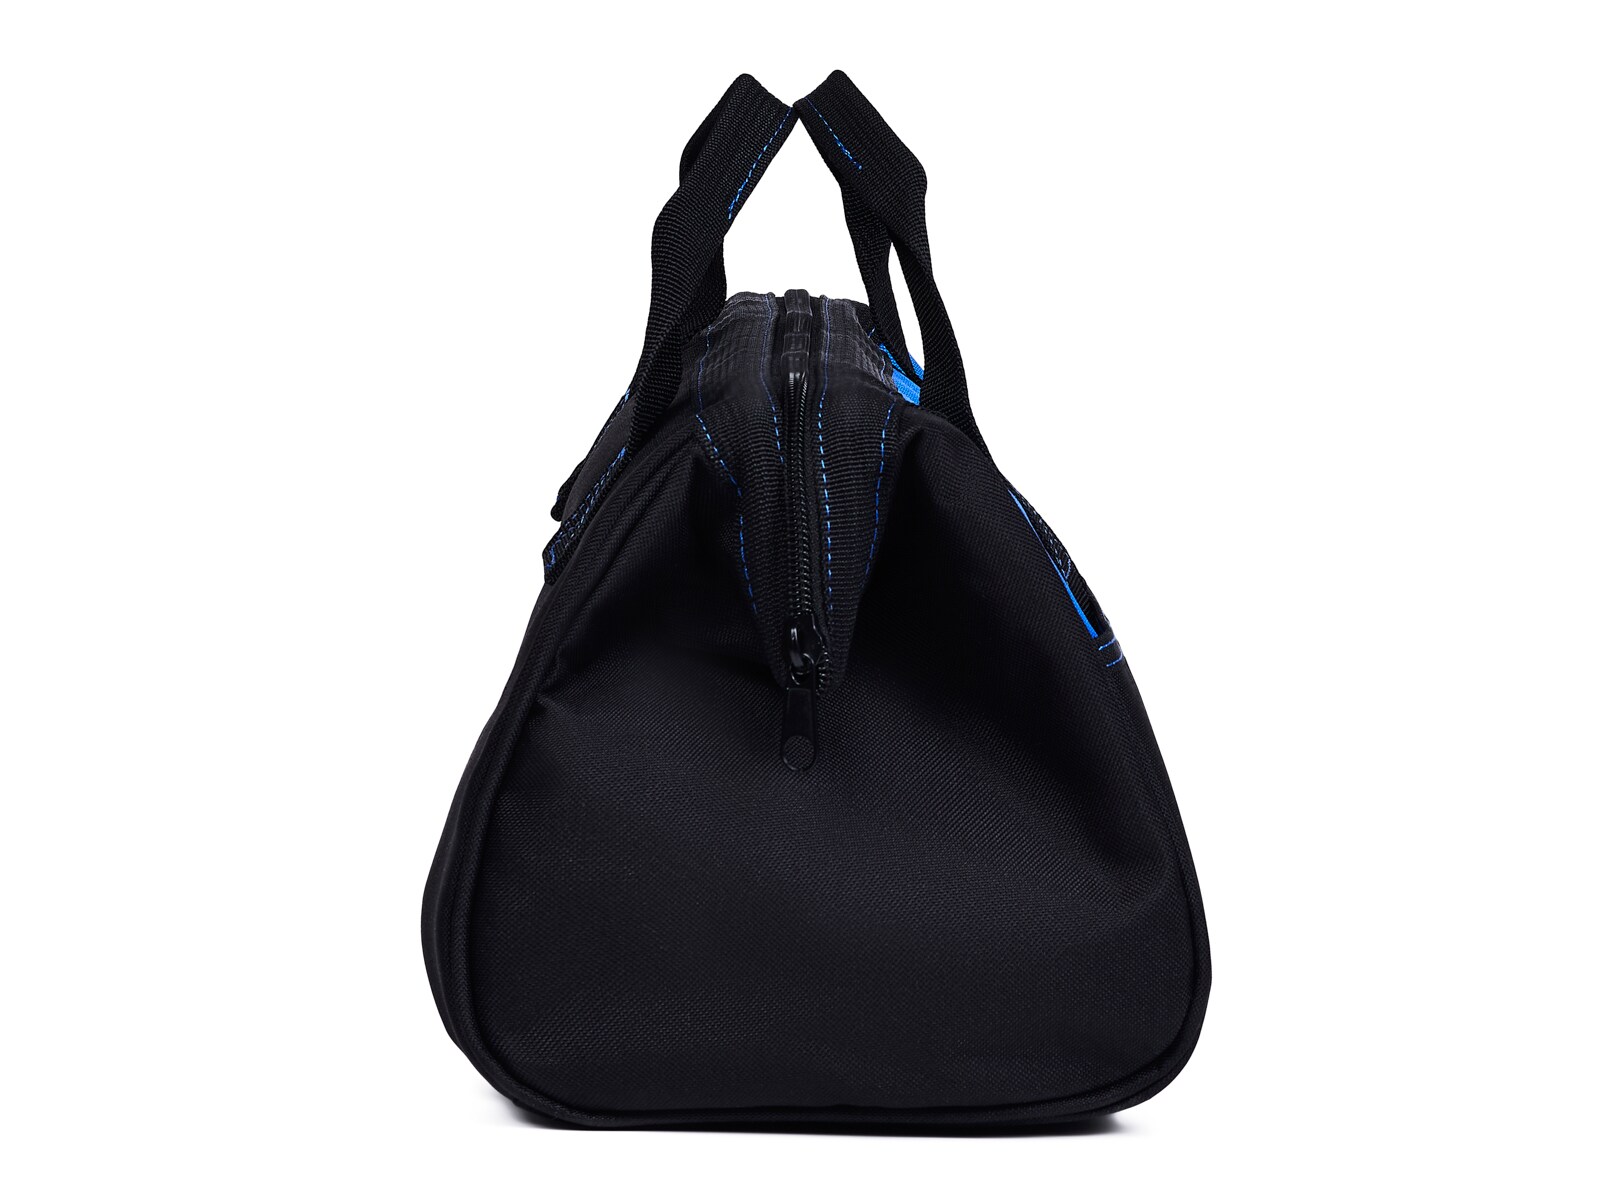 Kobalt Black/Blue Polyester 12-in Tool Bag at Lowes.com